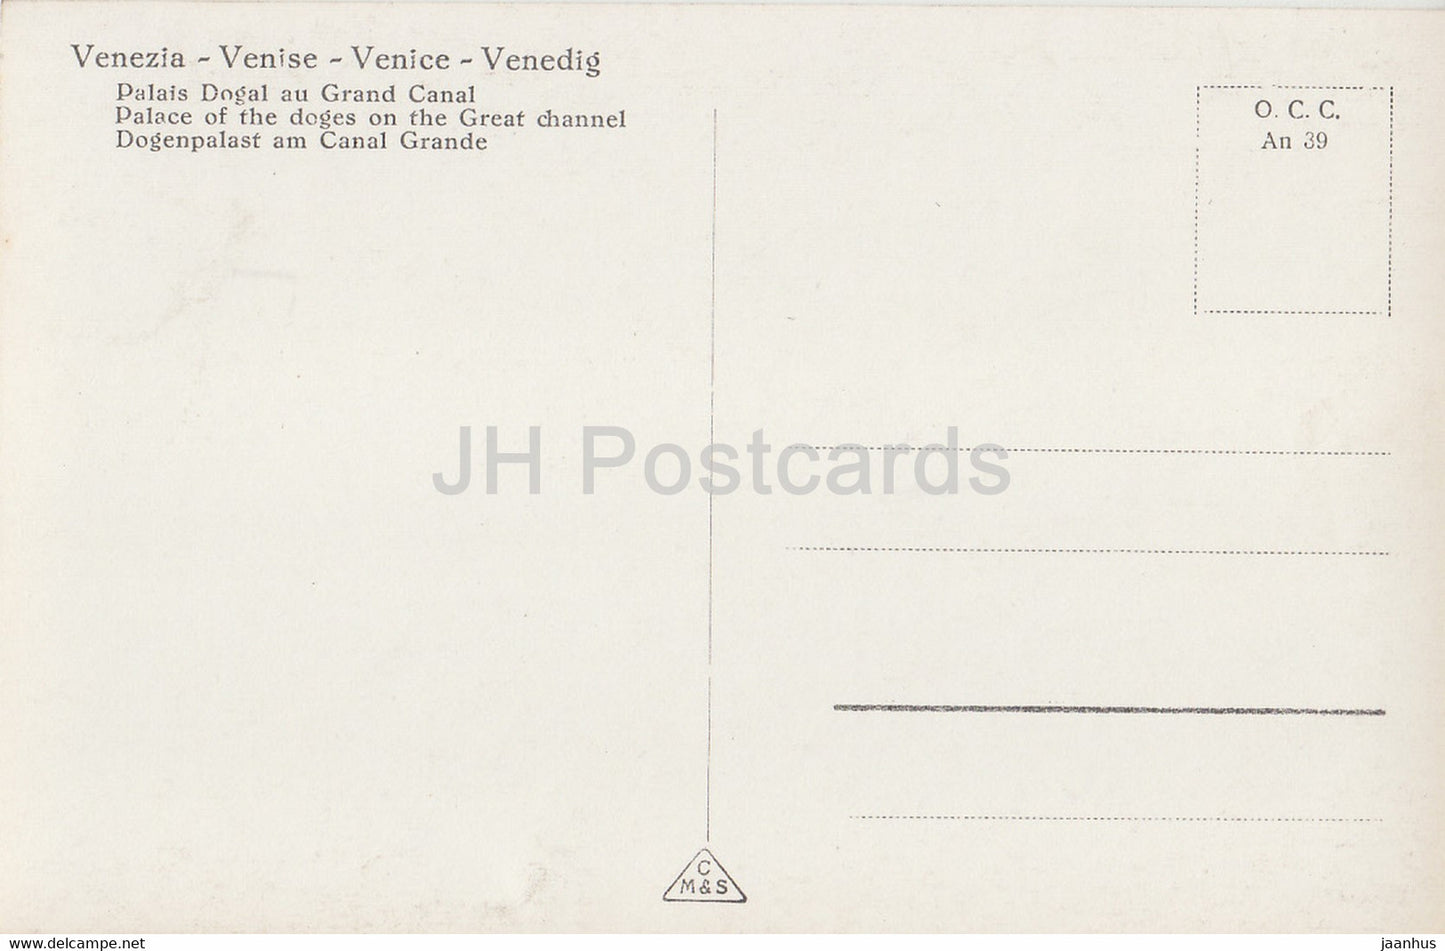 Venezia - Vendig - Venise - Palais des Doges sur le Grand Canal - 645 - carte postale ancienne - Italie - inutilisée